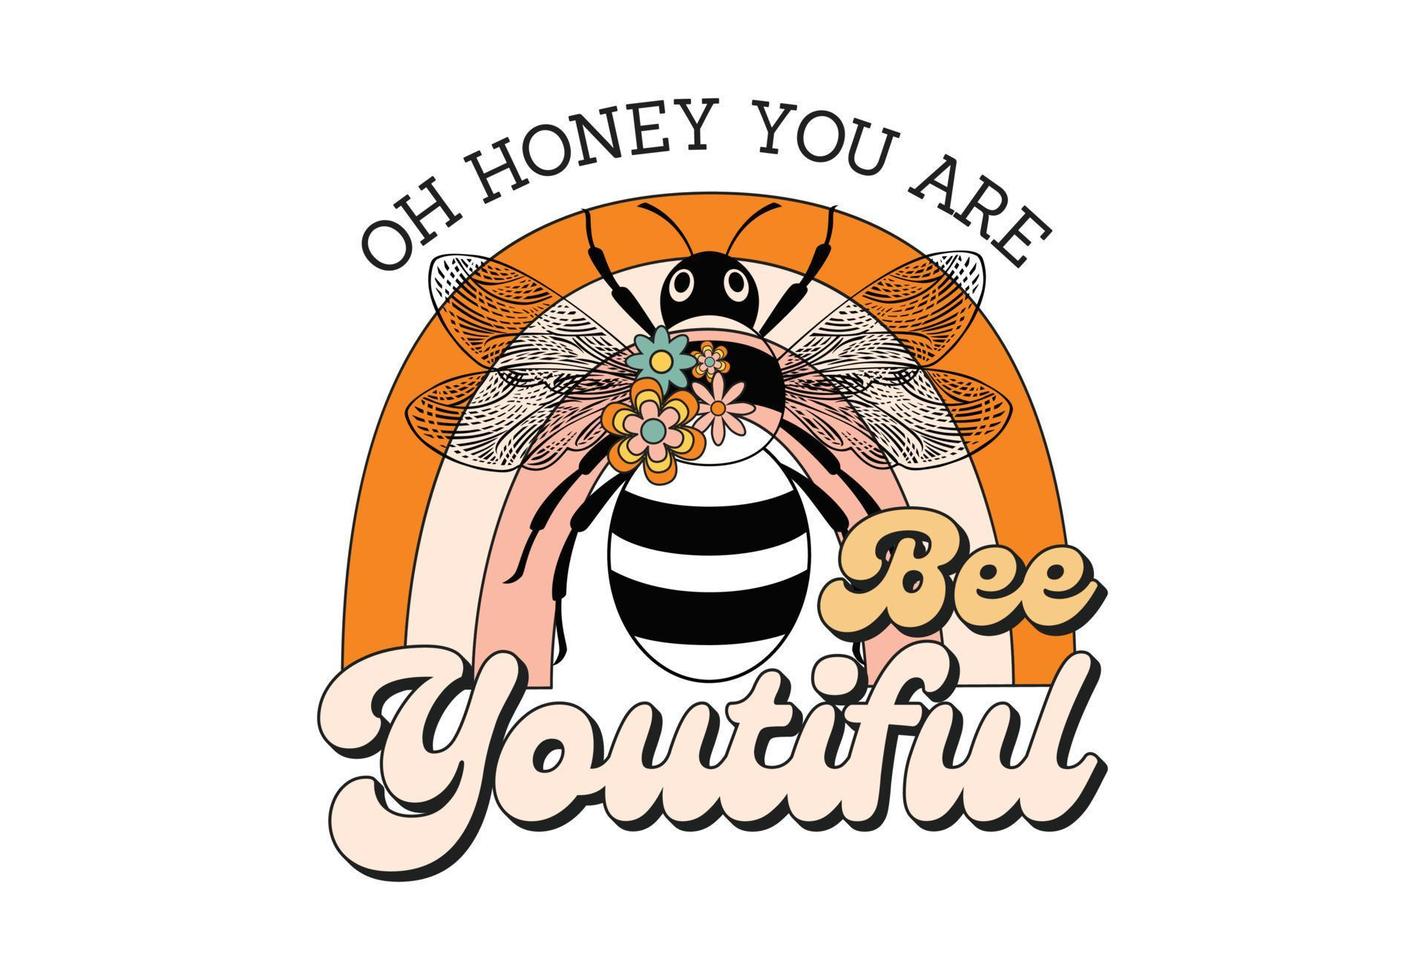 Oh Honig Sie sind Biene jugendlich, retro Biene Zitat vektor